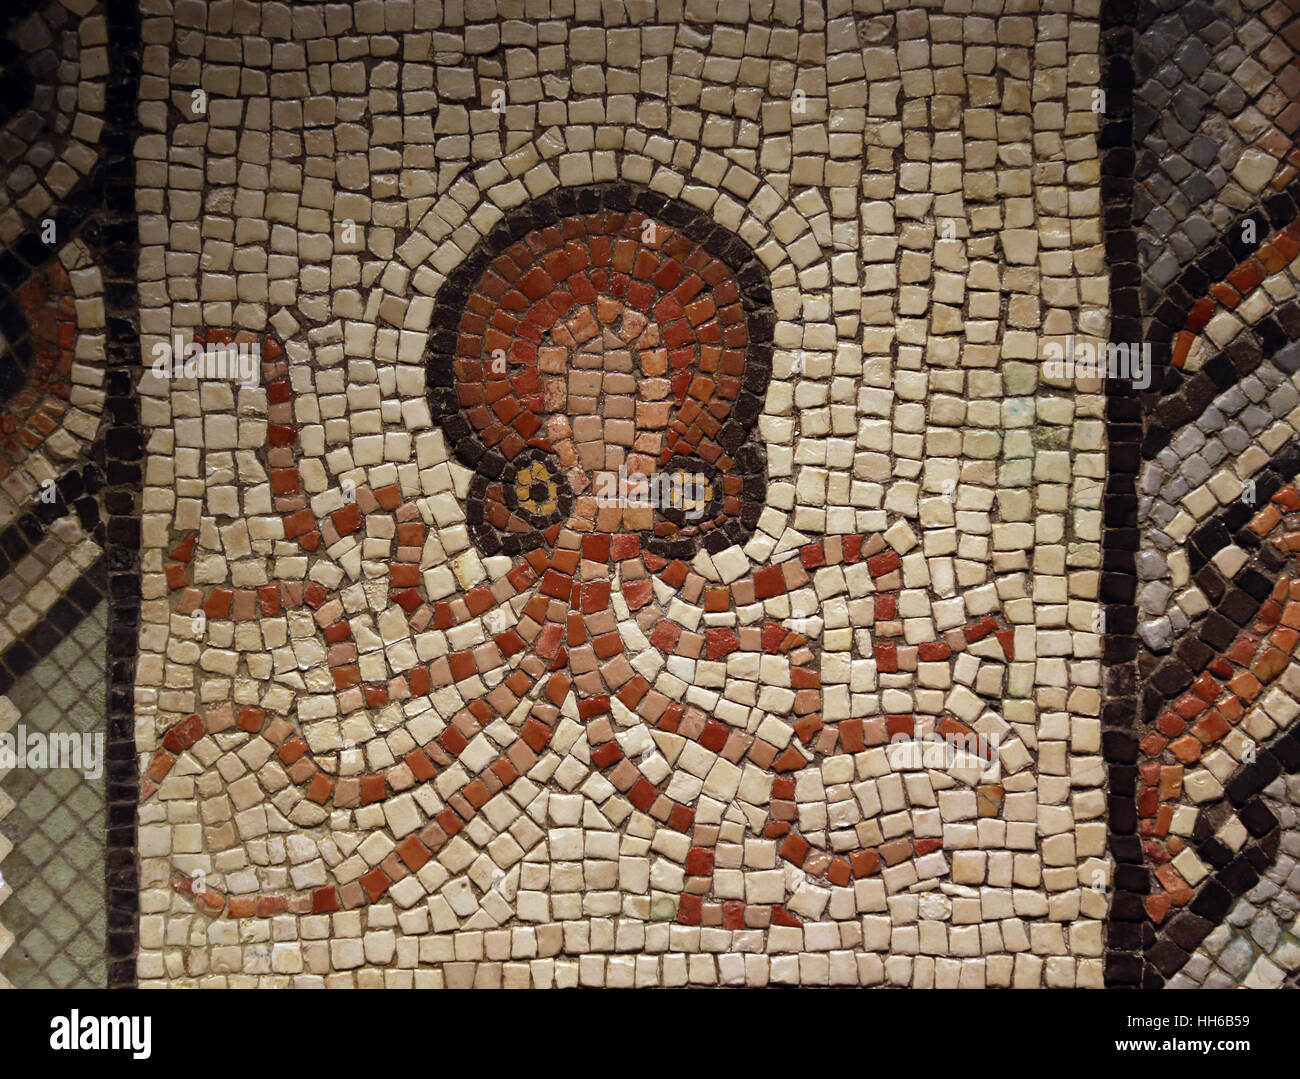 Mosaik mit Oktopus. Kalkstein. 2. bis 3. Jahrhundert. Villaquejida, Leon. Spanien. Nationales Archäologisches Museum, Madrid. Spanien. Stockfoto